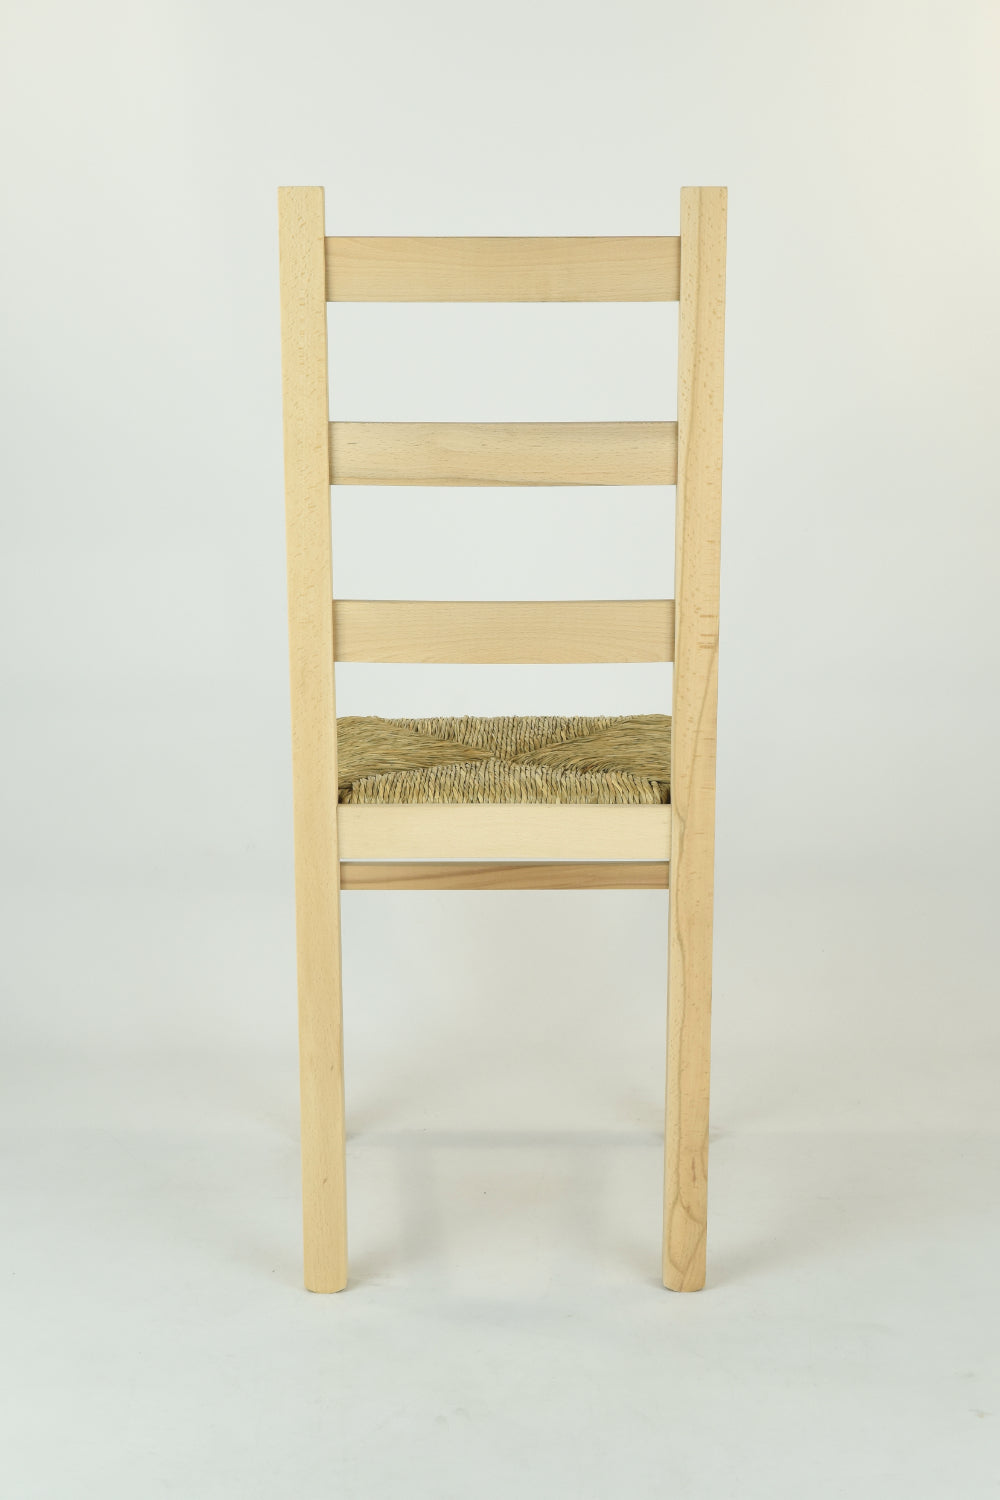 Tommychairs - Set 2 sillas de Cocina y Comedor  Rustica, estructura en madera de haya lijada, no tratada, 100% natural y asiento en paja